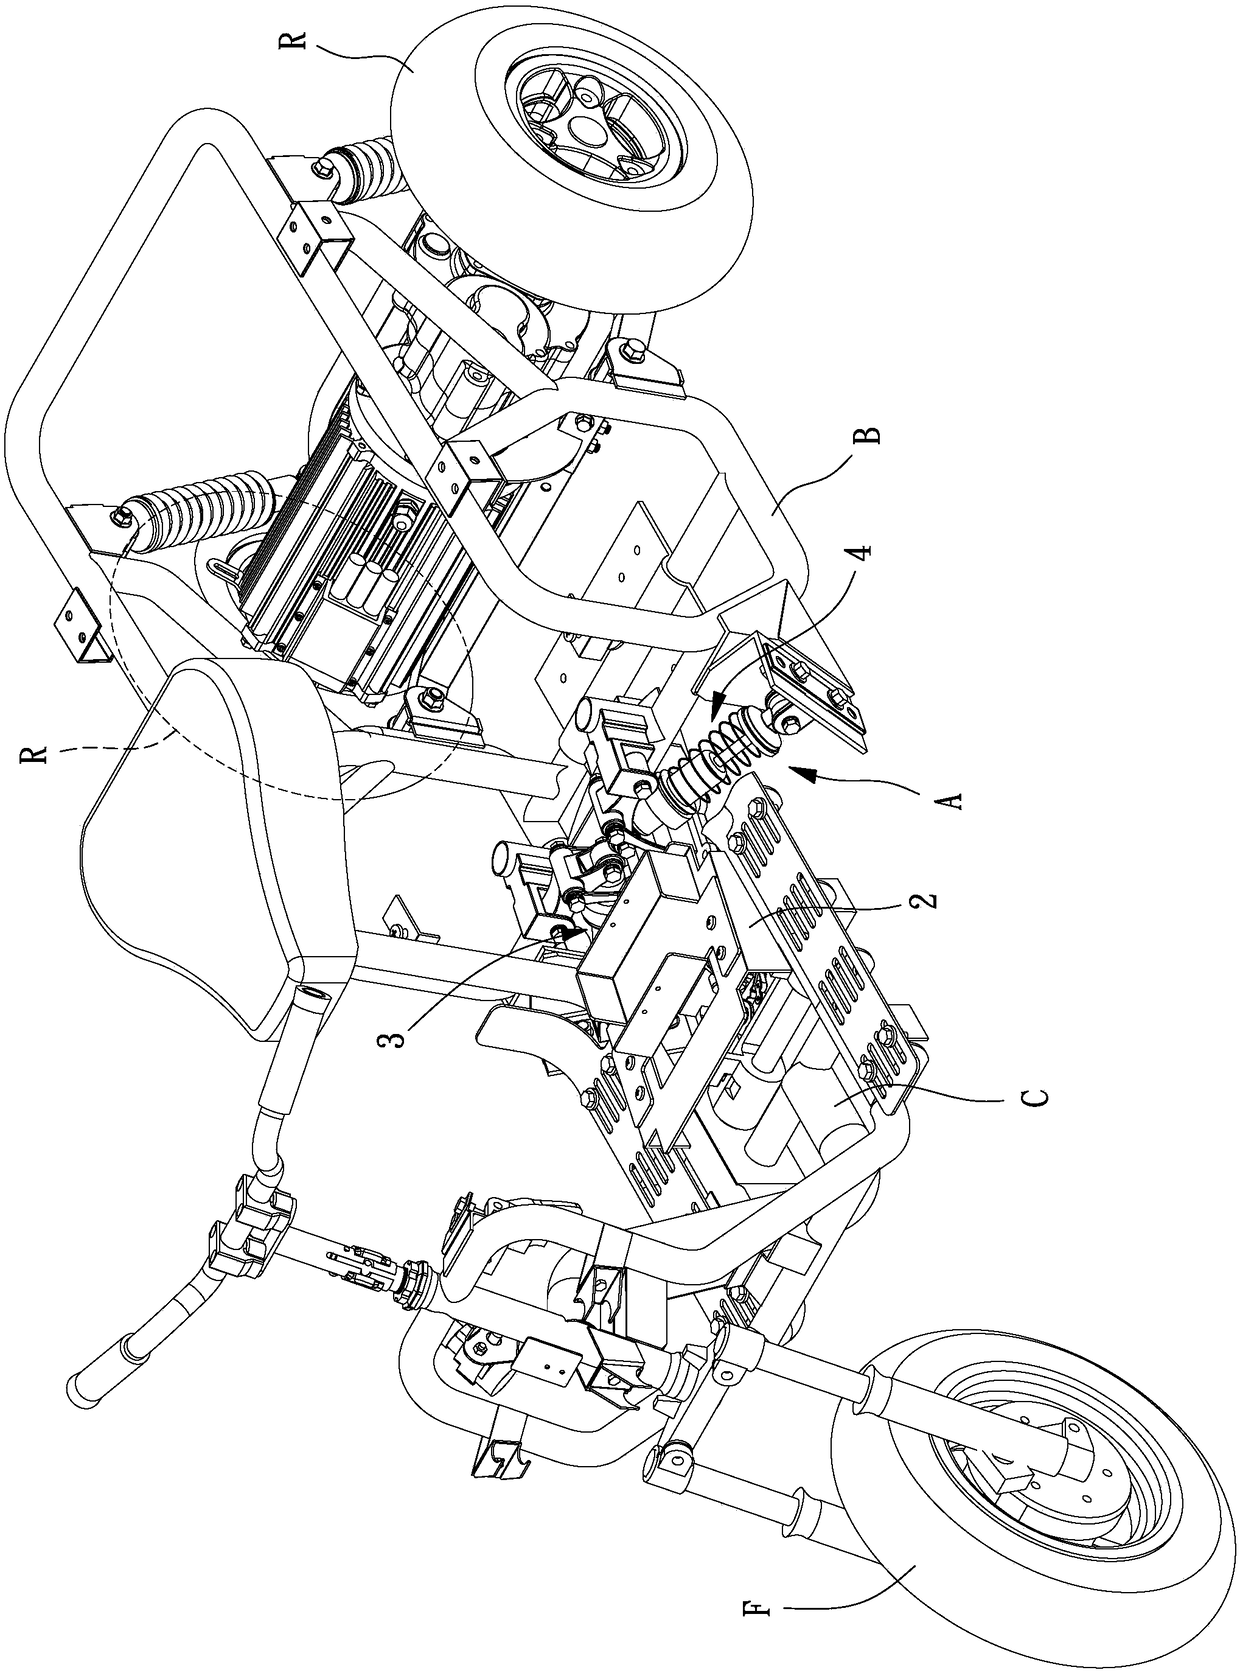 A vehicular multi-link tilt back mechanism